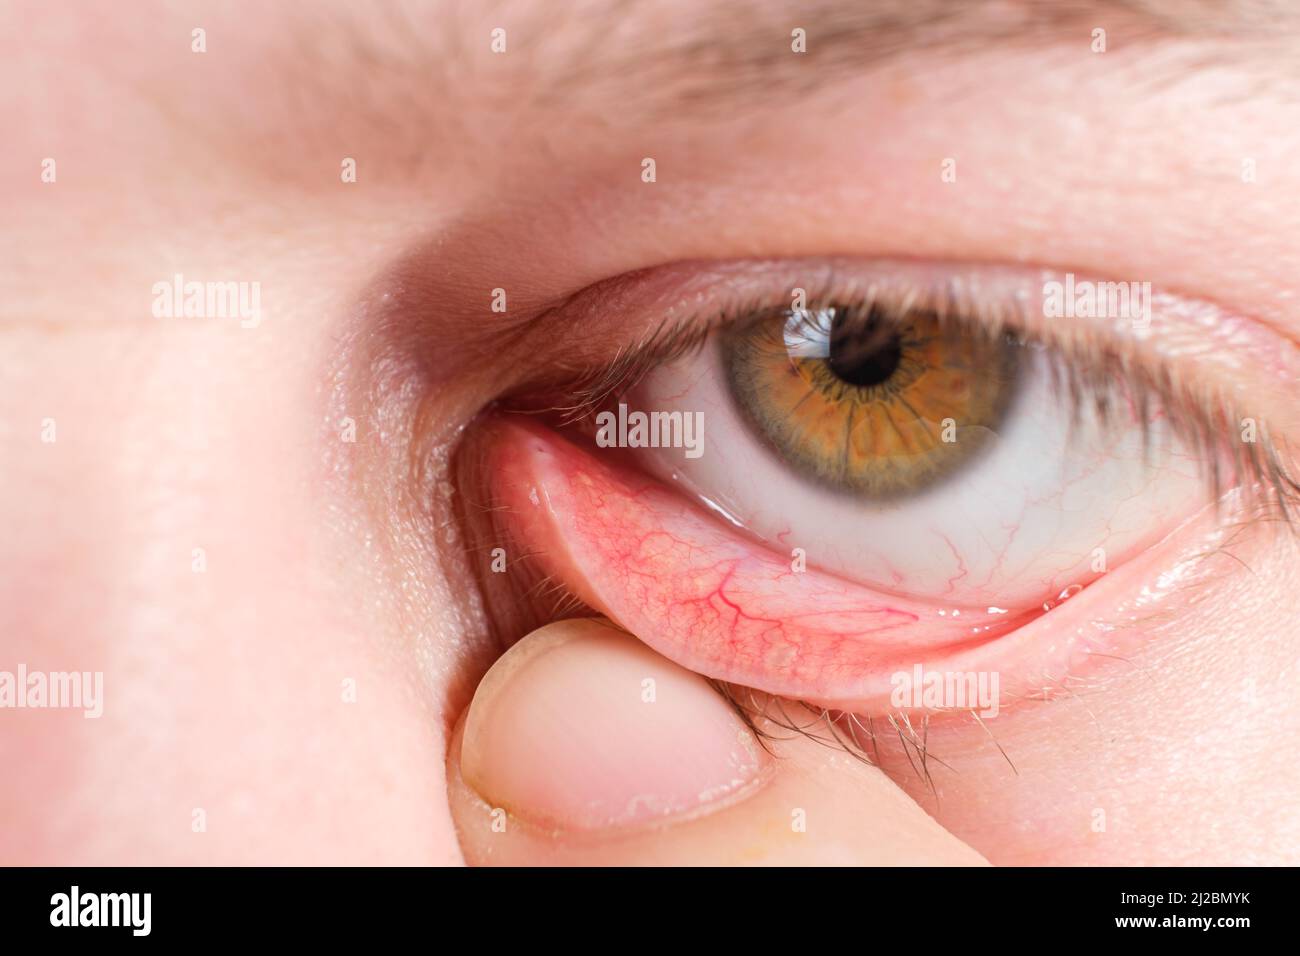 Rotes unteres Augenlid, ein Makrofoto des menschlichen Auges. Konjunktivitis, Entzündung der Schleimhaut des Auges. Stockfoto